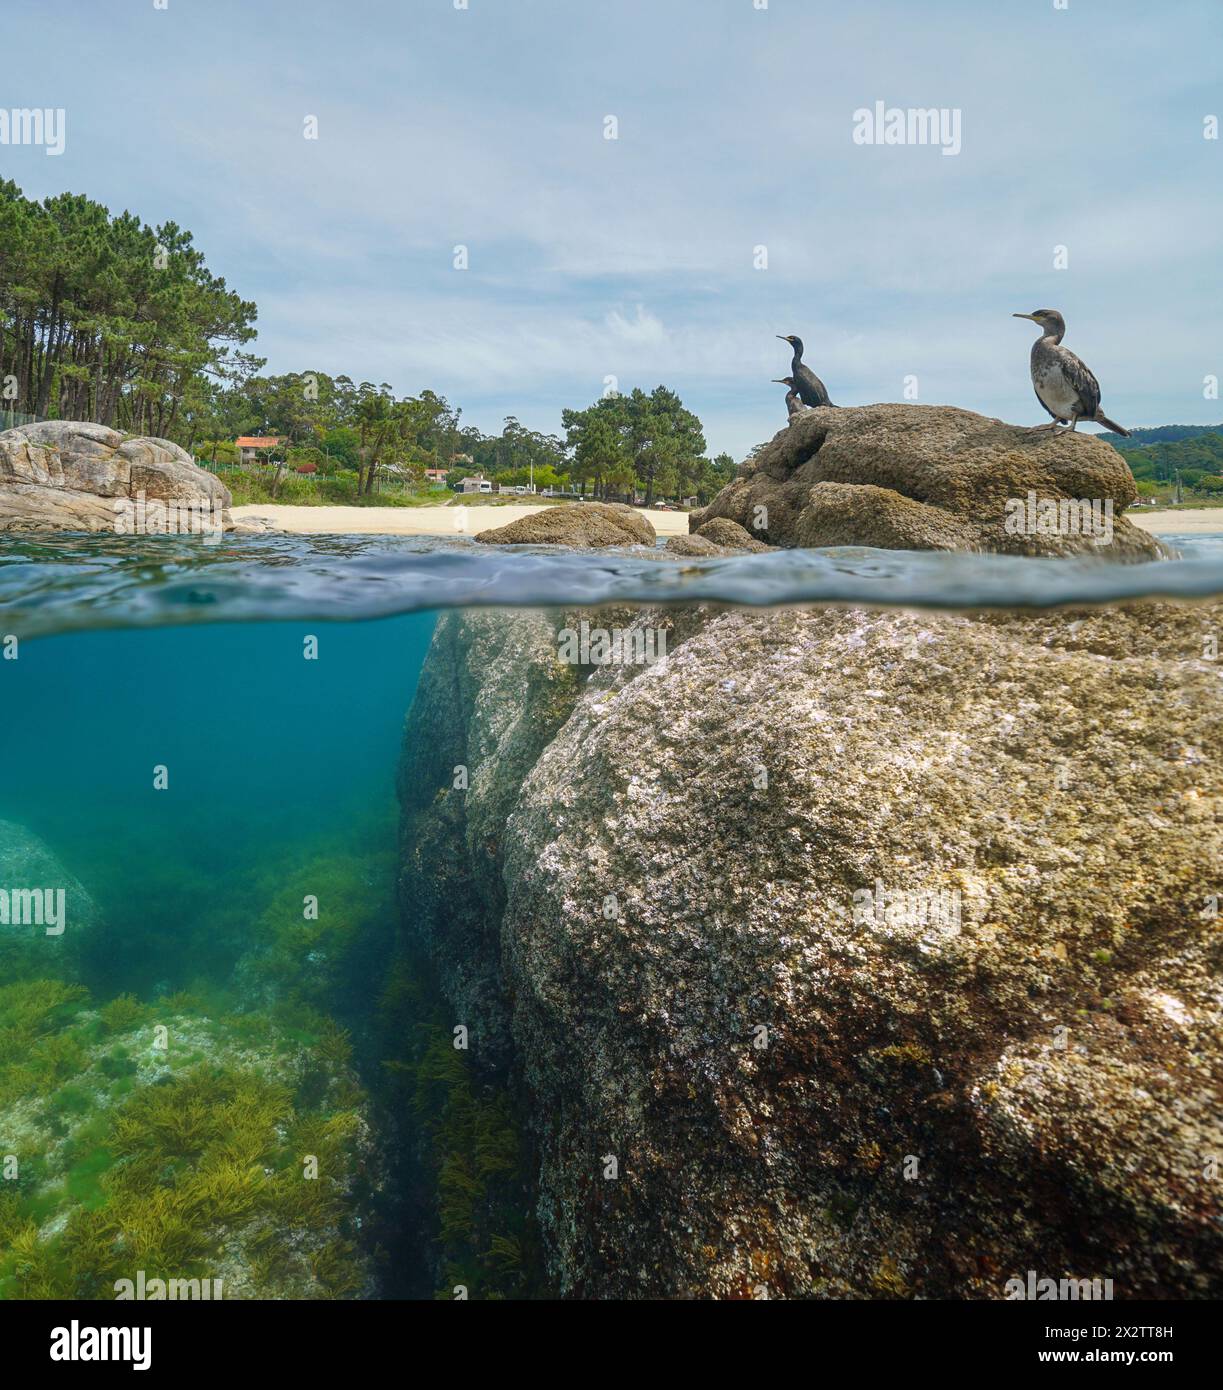 Atlantikküste in Spanien mit Kormoranvögeln auf einem Felsen, geteilter Blick über und unter der Wasseroberfläche, Naturszene, Galicien, Rias Baixas Stockfoto